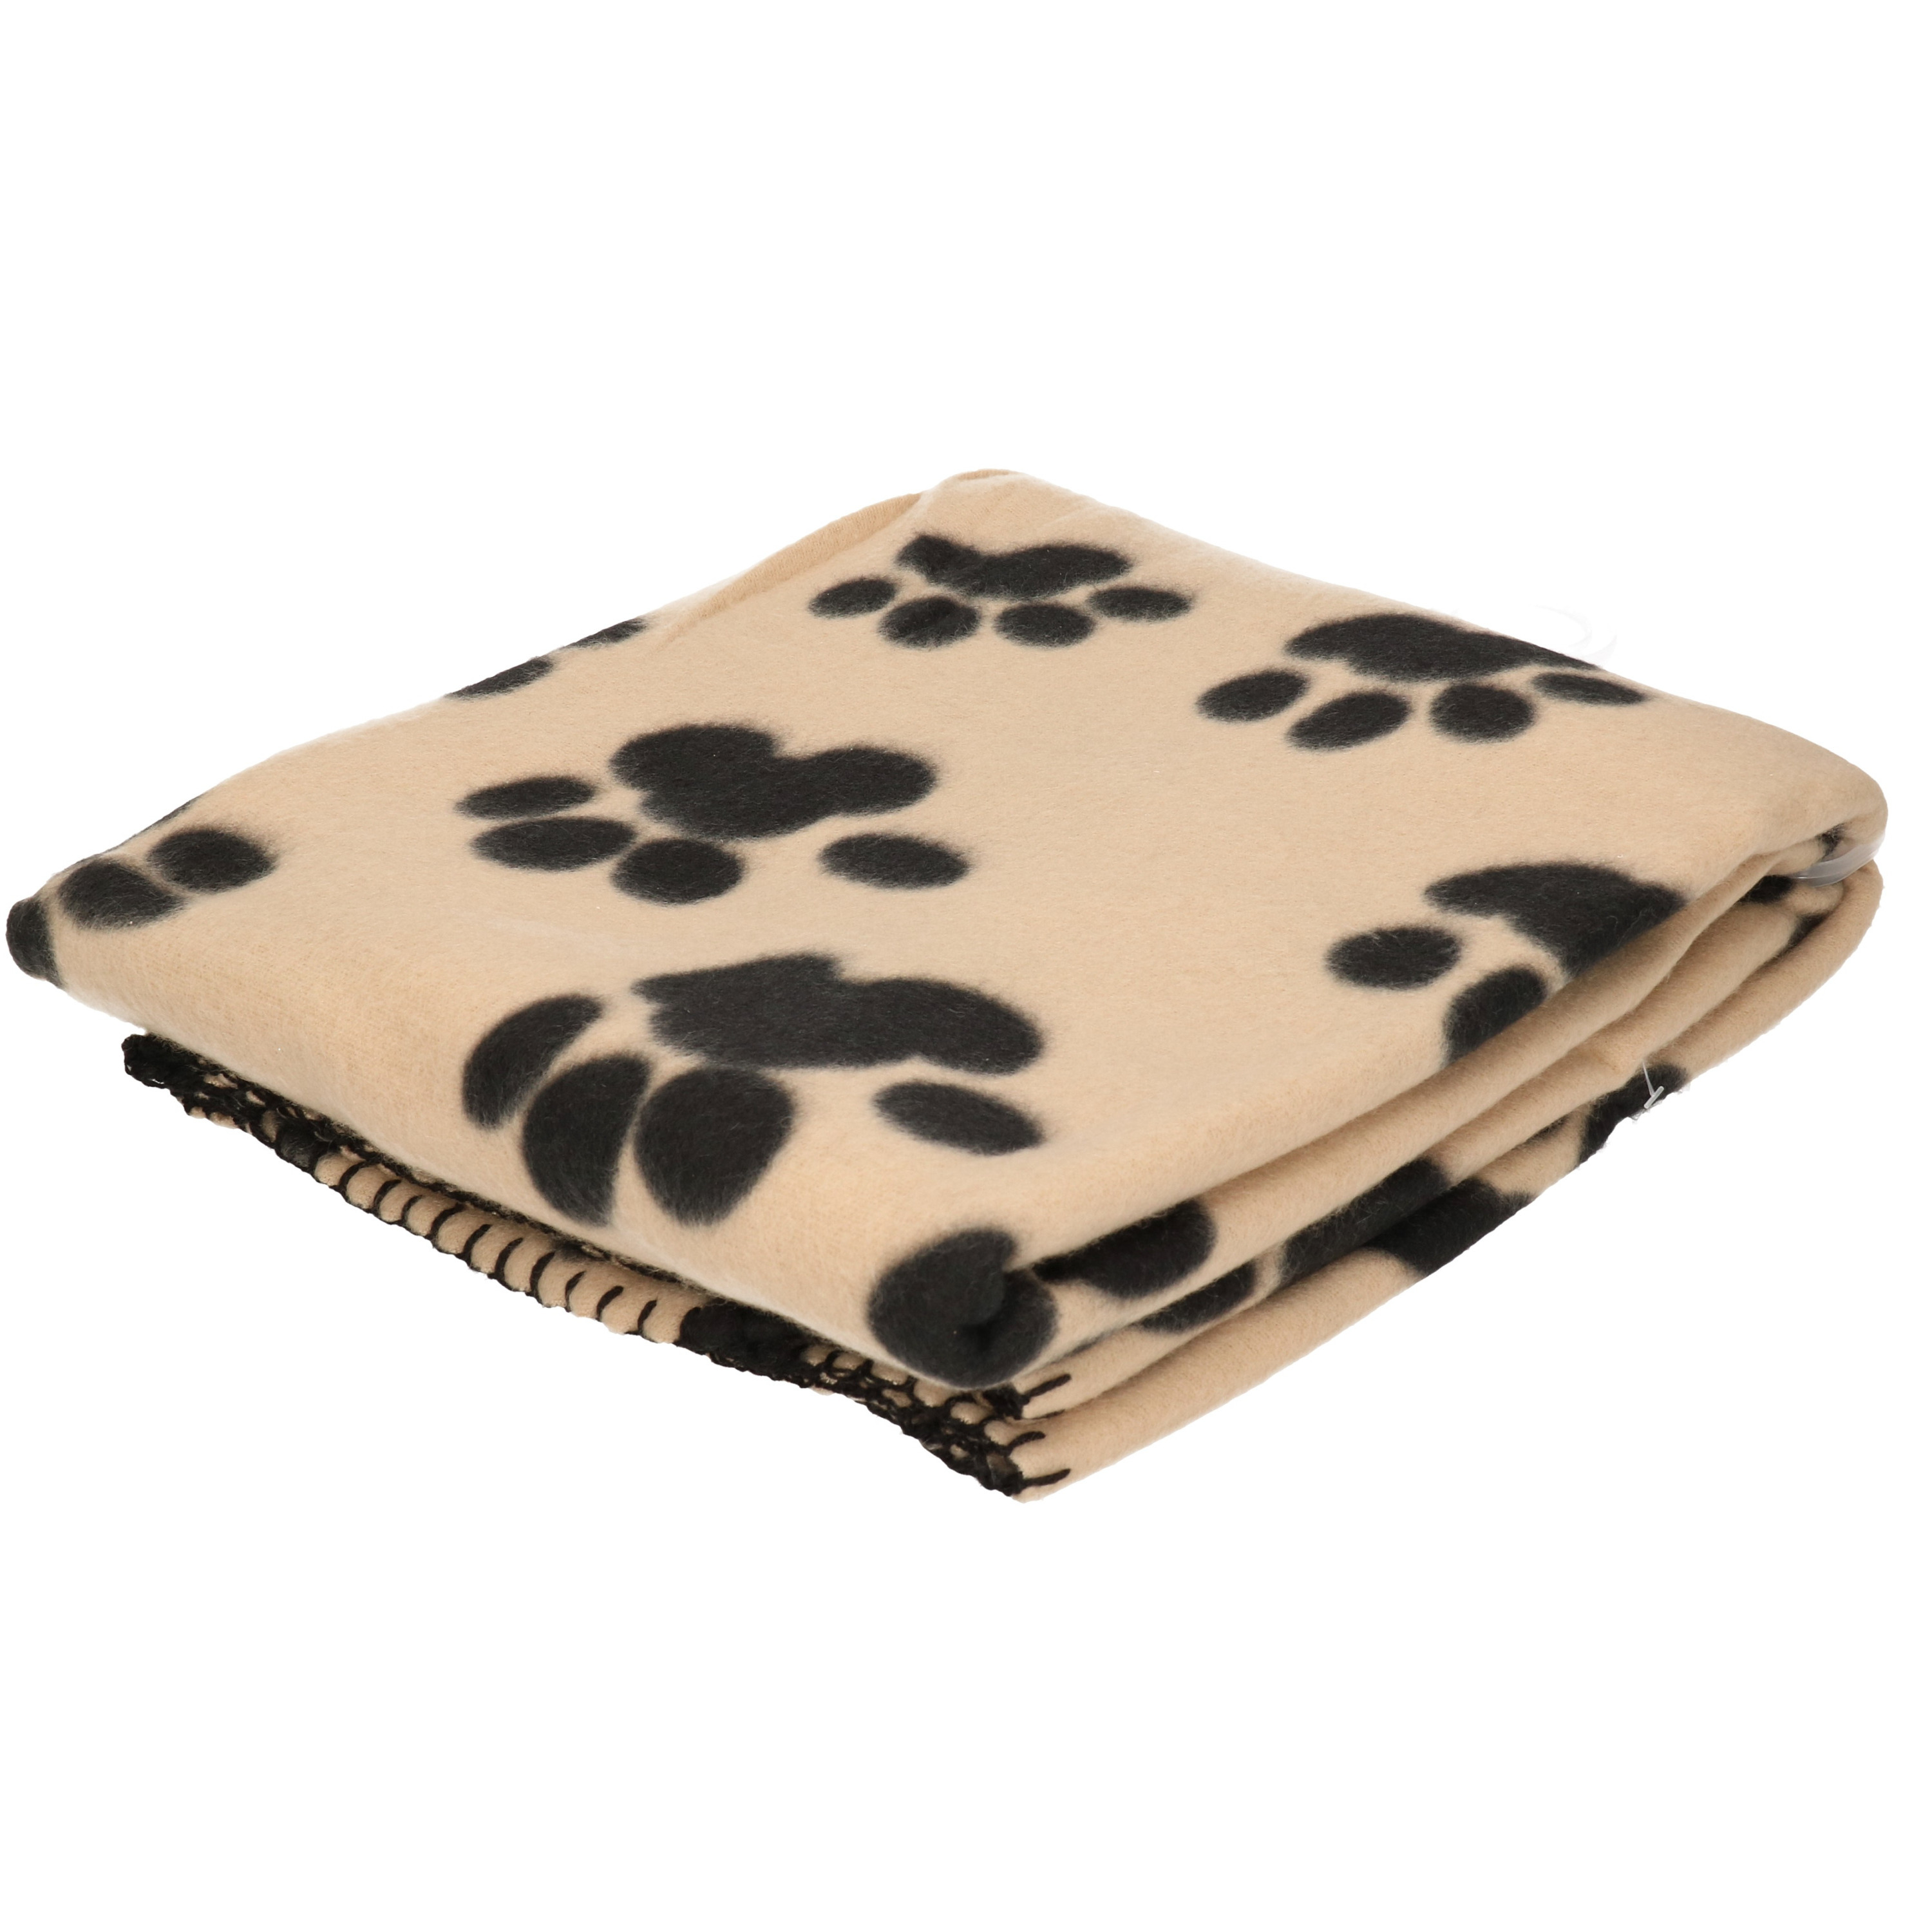 Fleece deken voor huisdieren met pootafdrukken print 125 x 157 cm beige-zwart